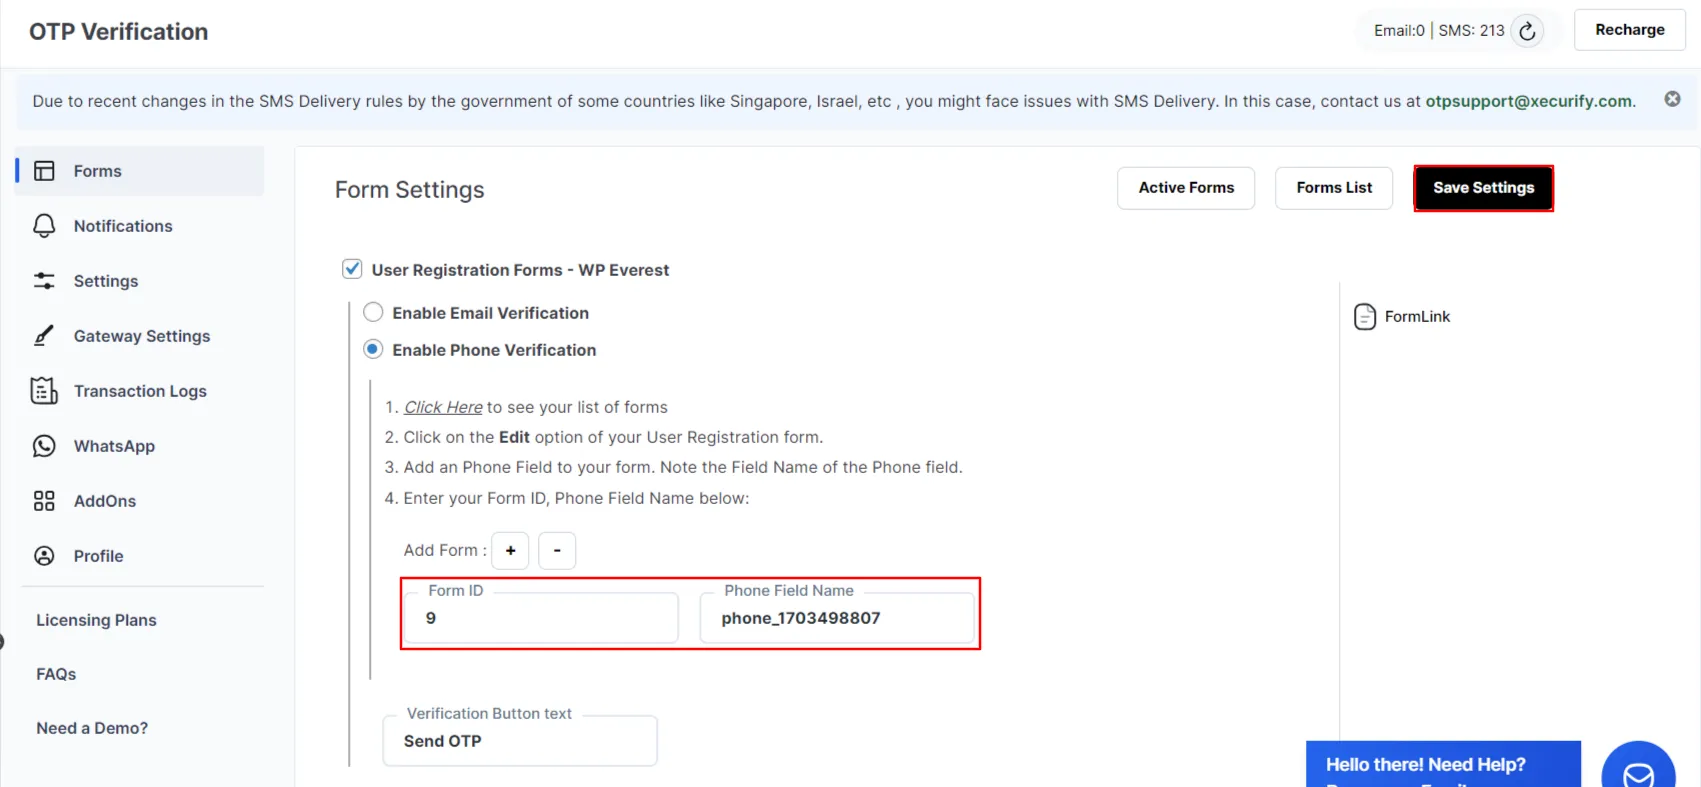 Formularios de registro de usuario - WP Everest - Haga clic en Guardar configuración